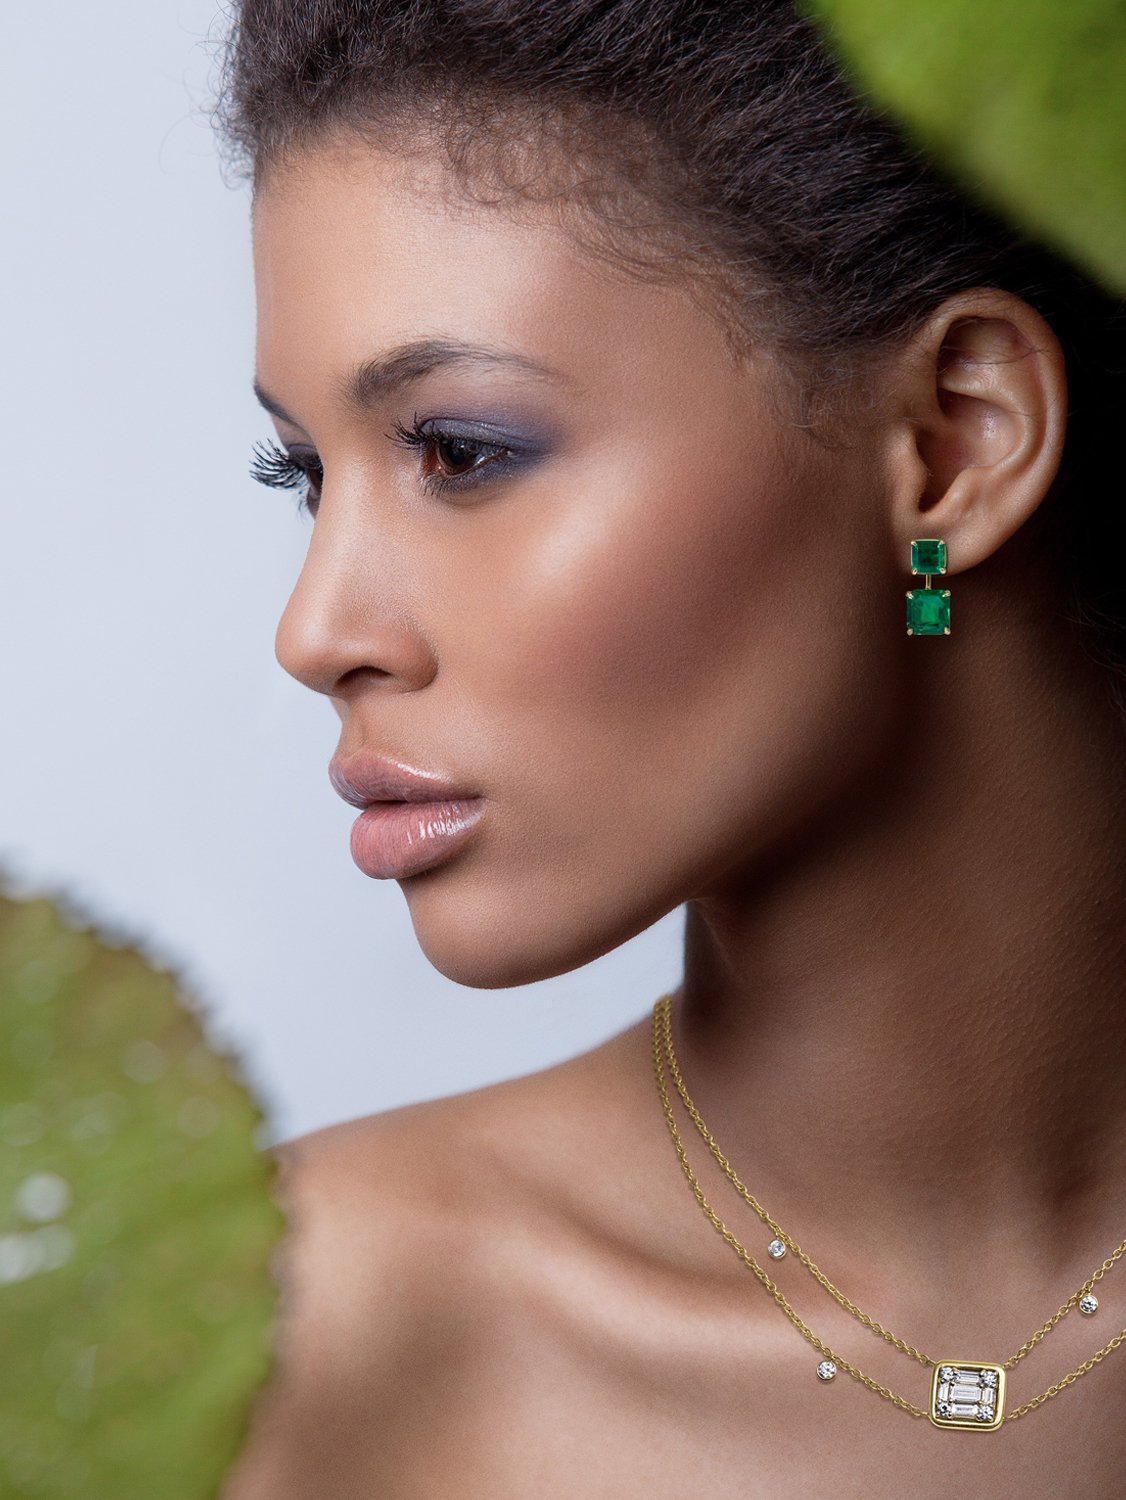 Medina Large Stud Earrings Silver Colombian Emerald